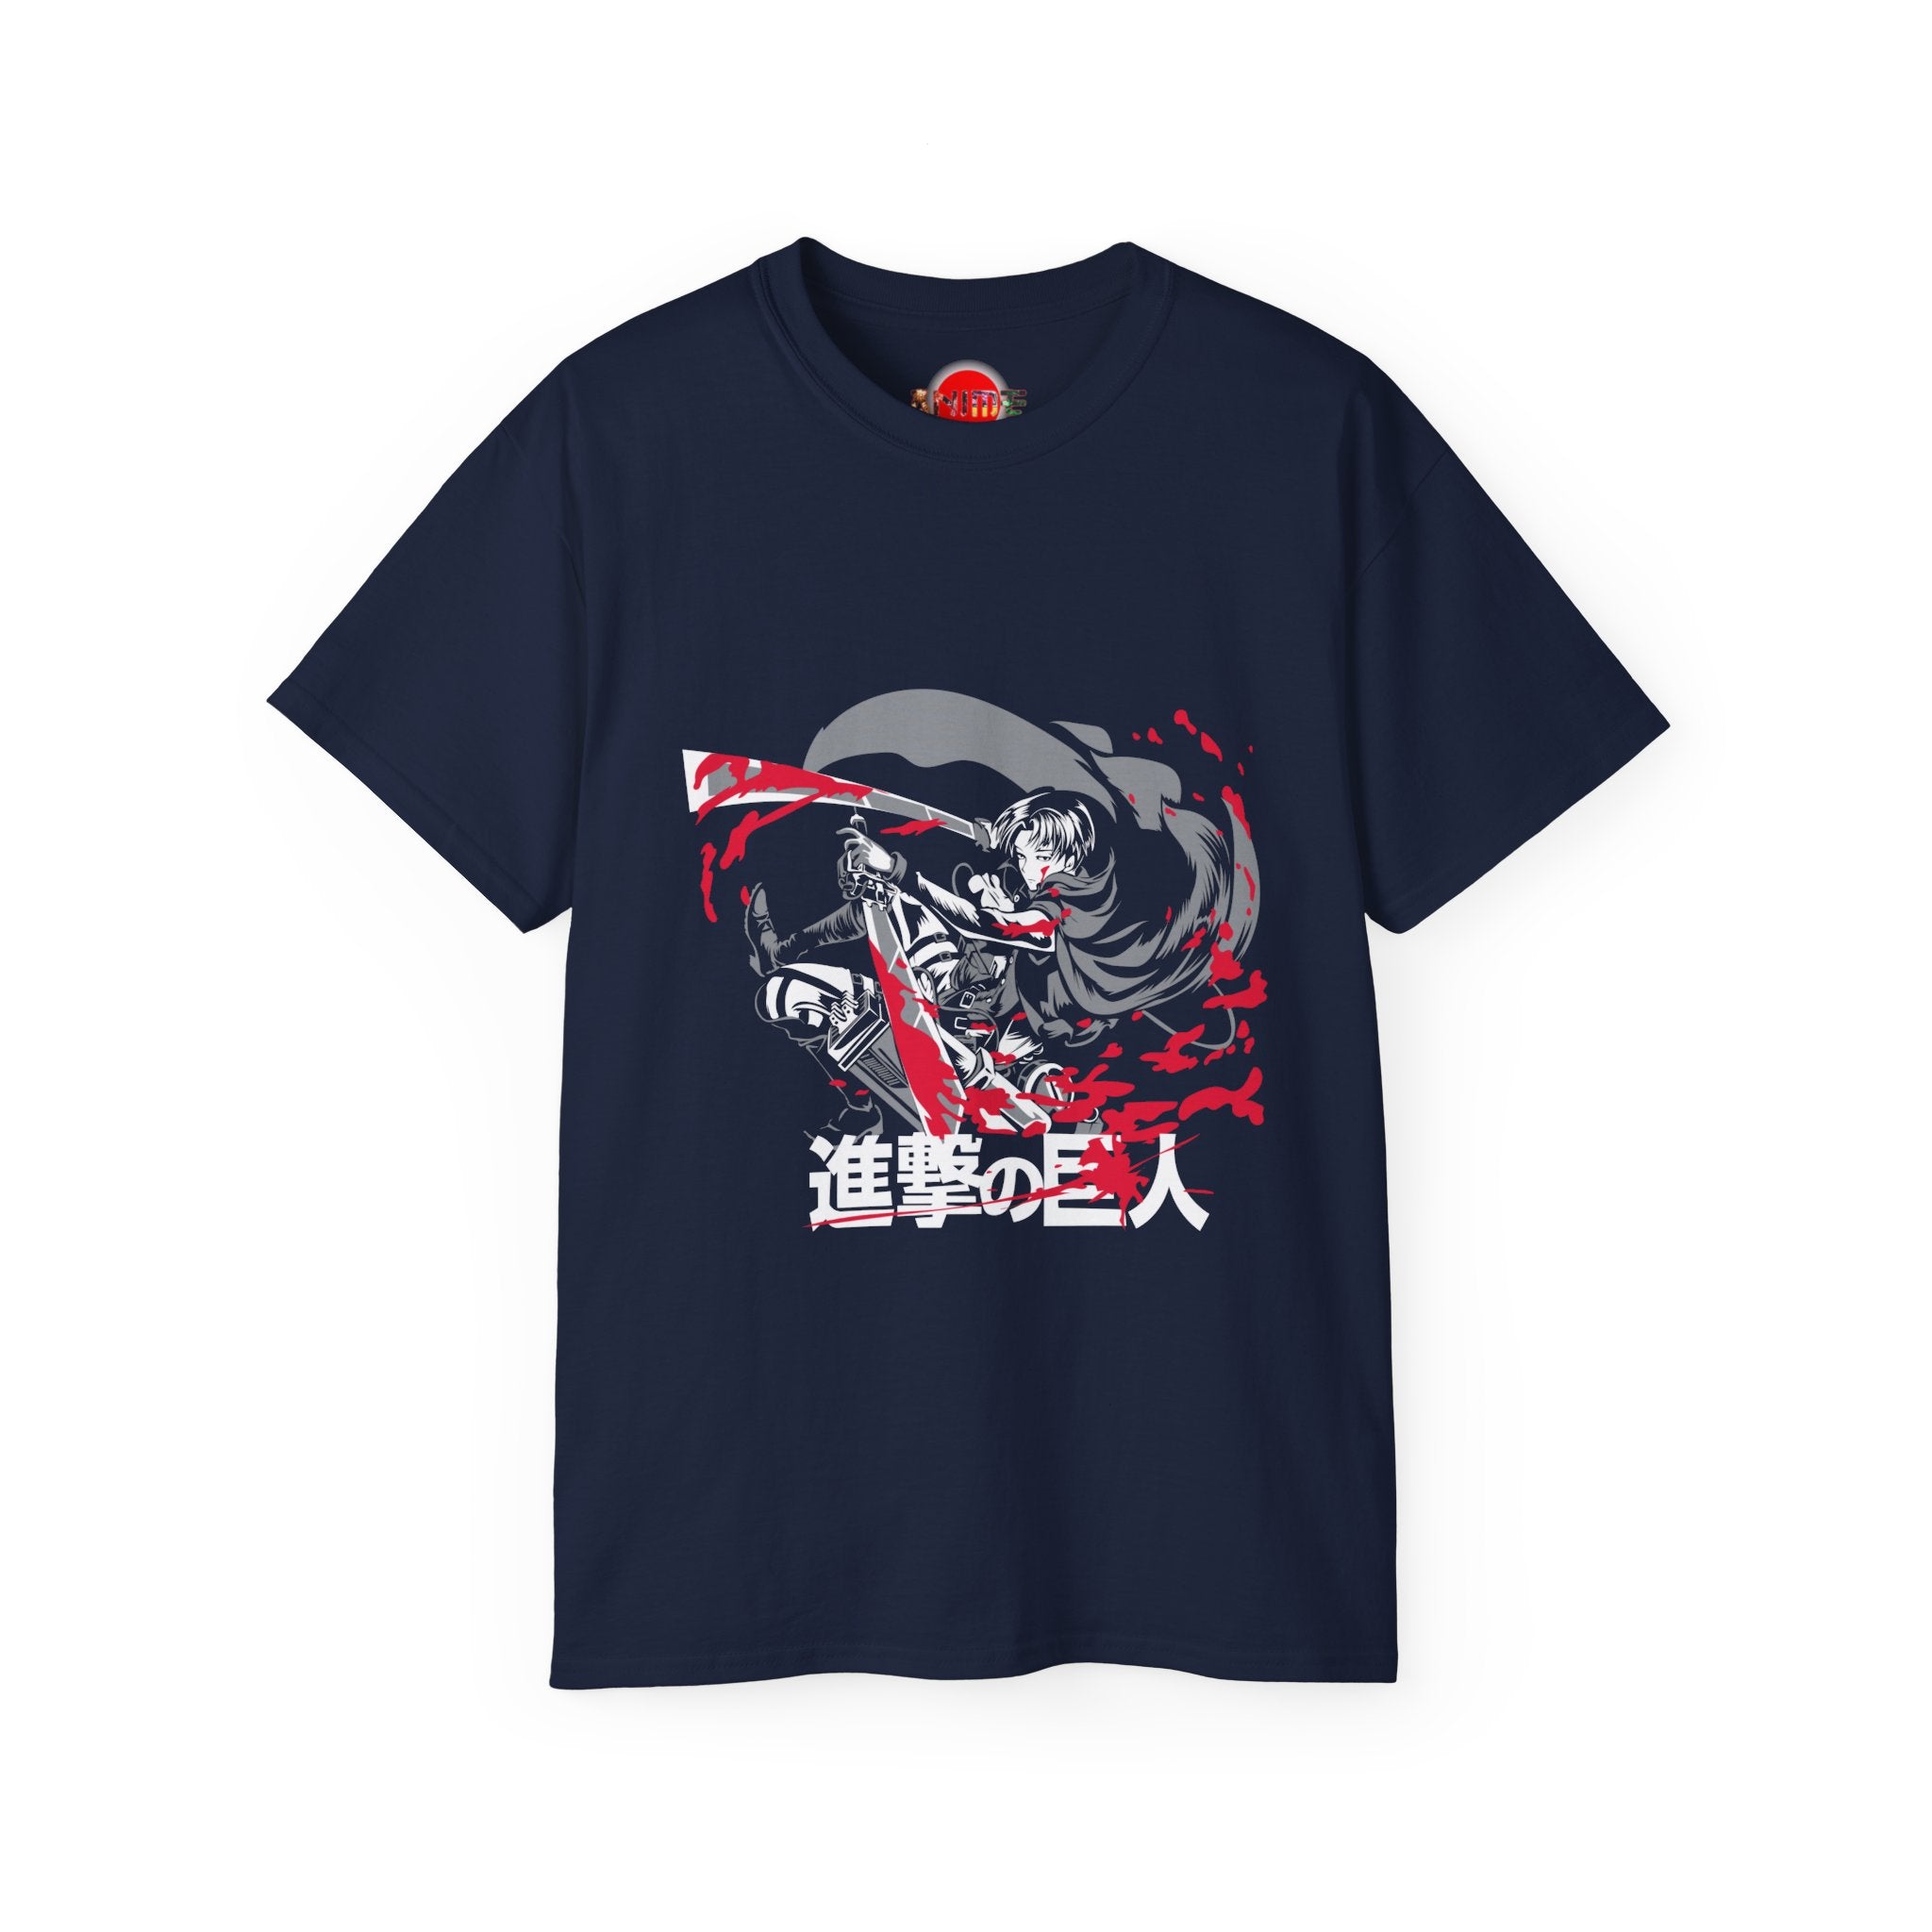 Attack on Titan Shirt | Unisex Ultra Cotton Tee | Japanese Anime World